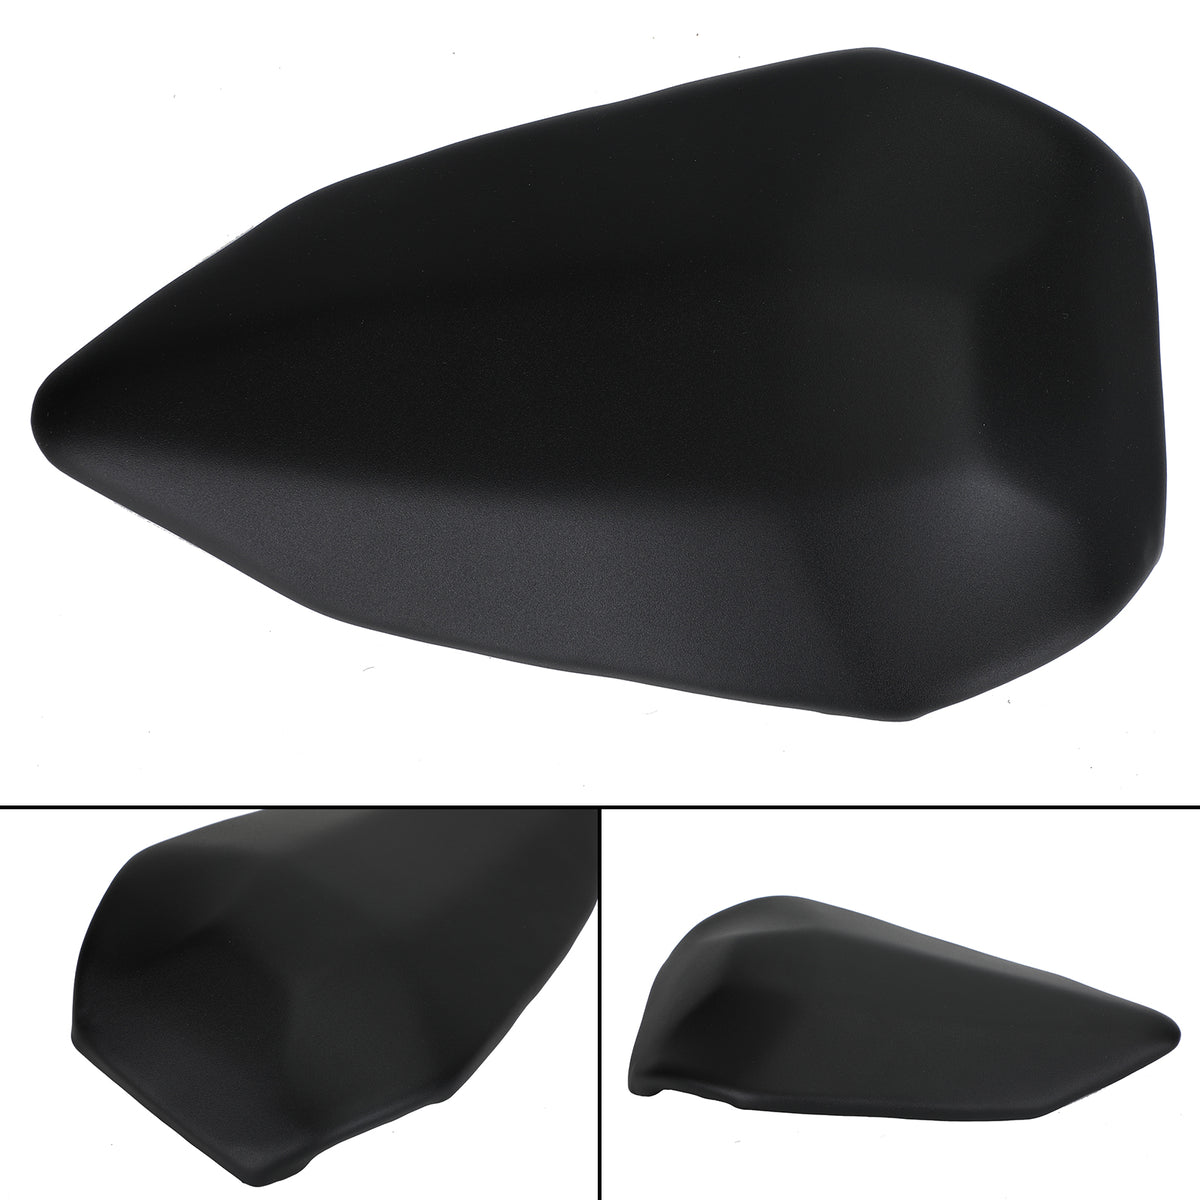 Cuscino nero per sedile passeggero posteriore adatto per Ducati 899 2012-2014 1199 2012-2014 generico